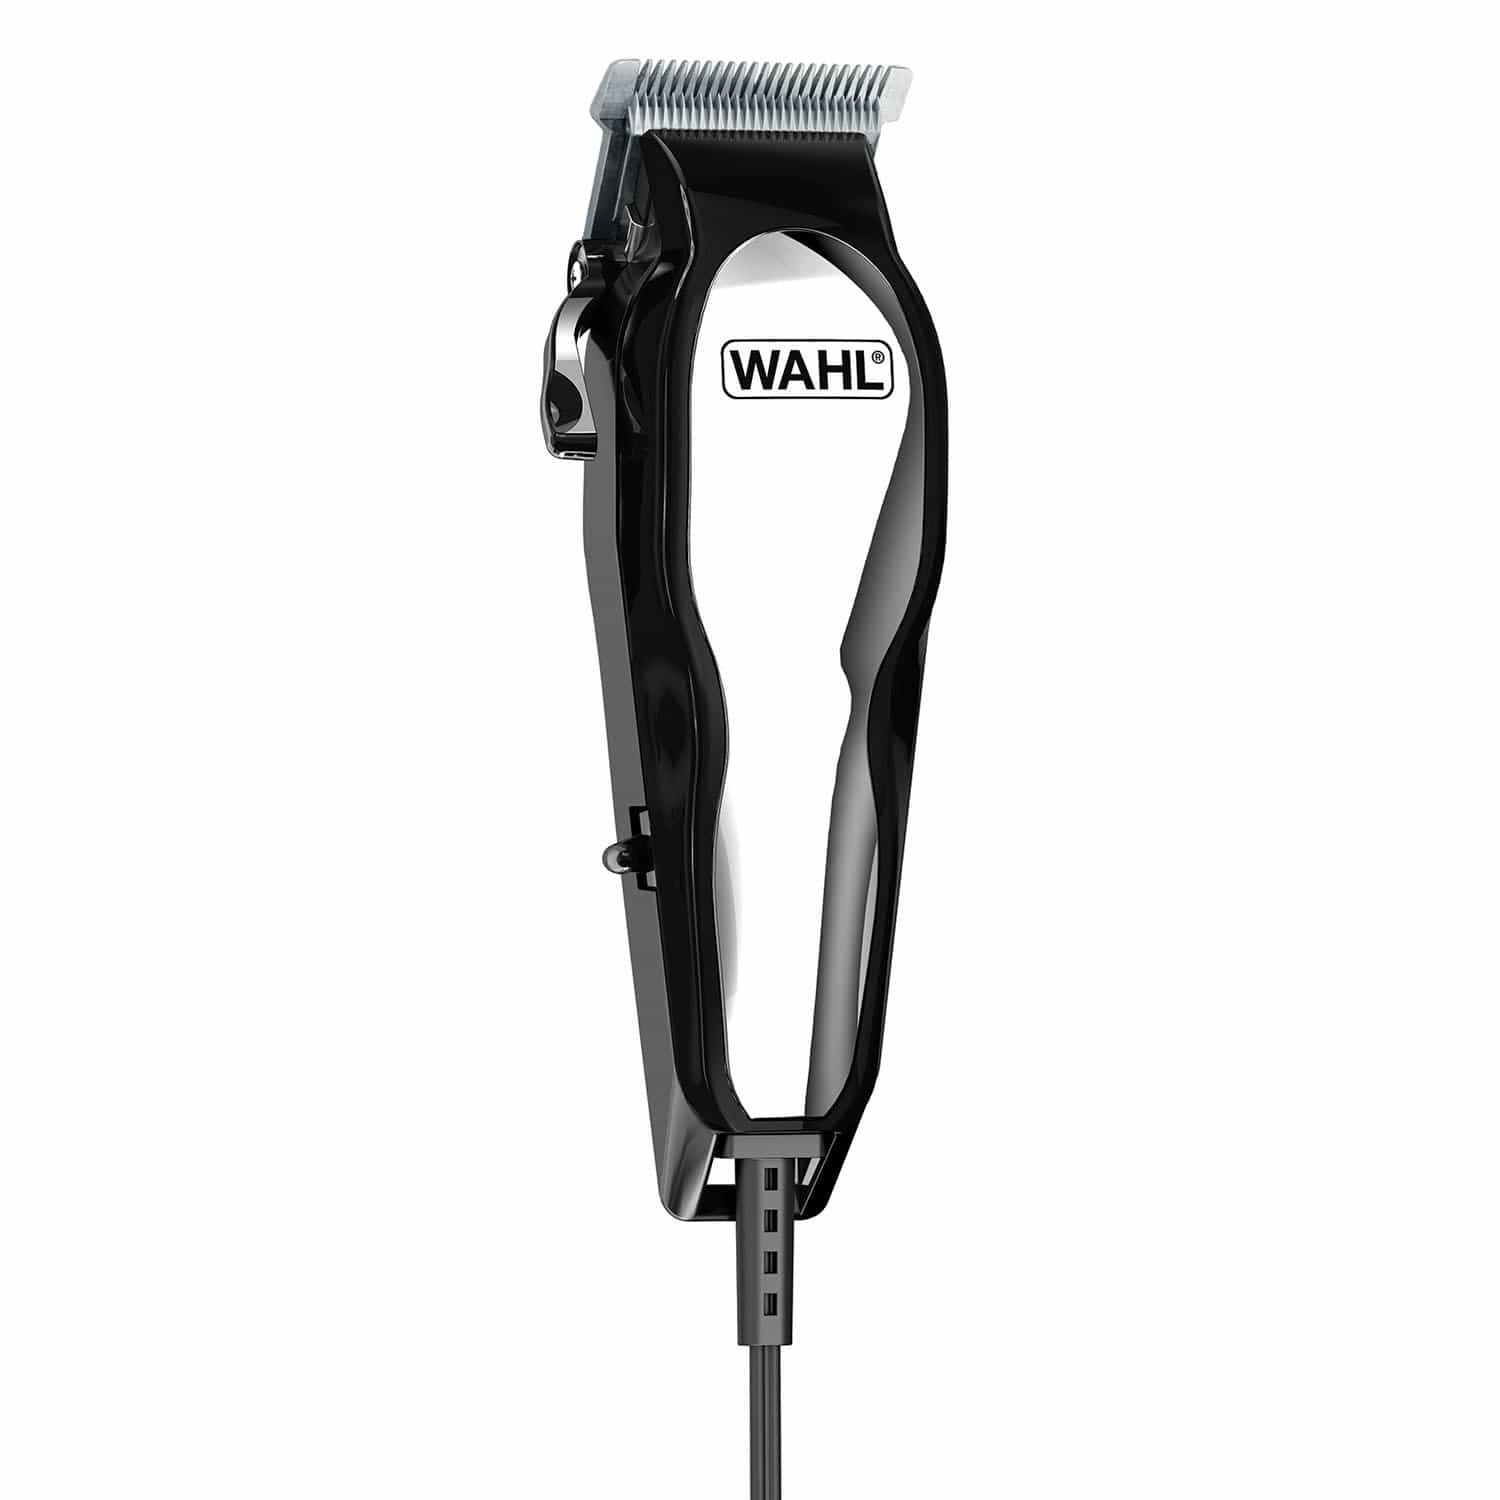 Wahl Baldfader 14-Piece Hair Cutting Kit